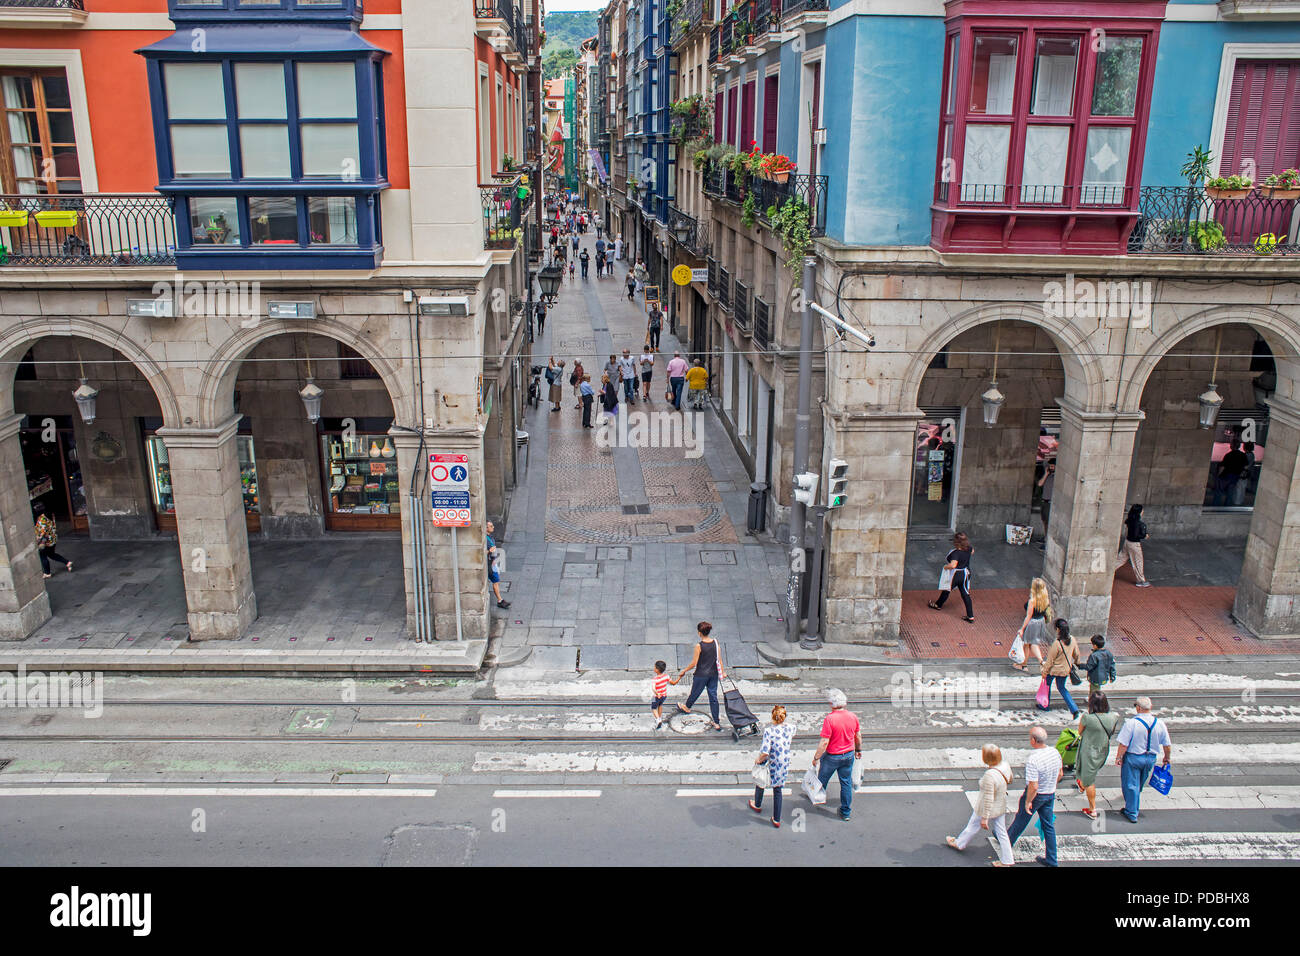 Architektur, traditionellen, klassischen, typischen, Zebrastreifen, erribera Straße an der Calle de la Tenderia, Altstadt (Casco Viejo), Bilbao, Spanien Stockfoto